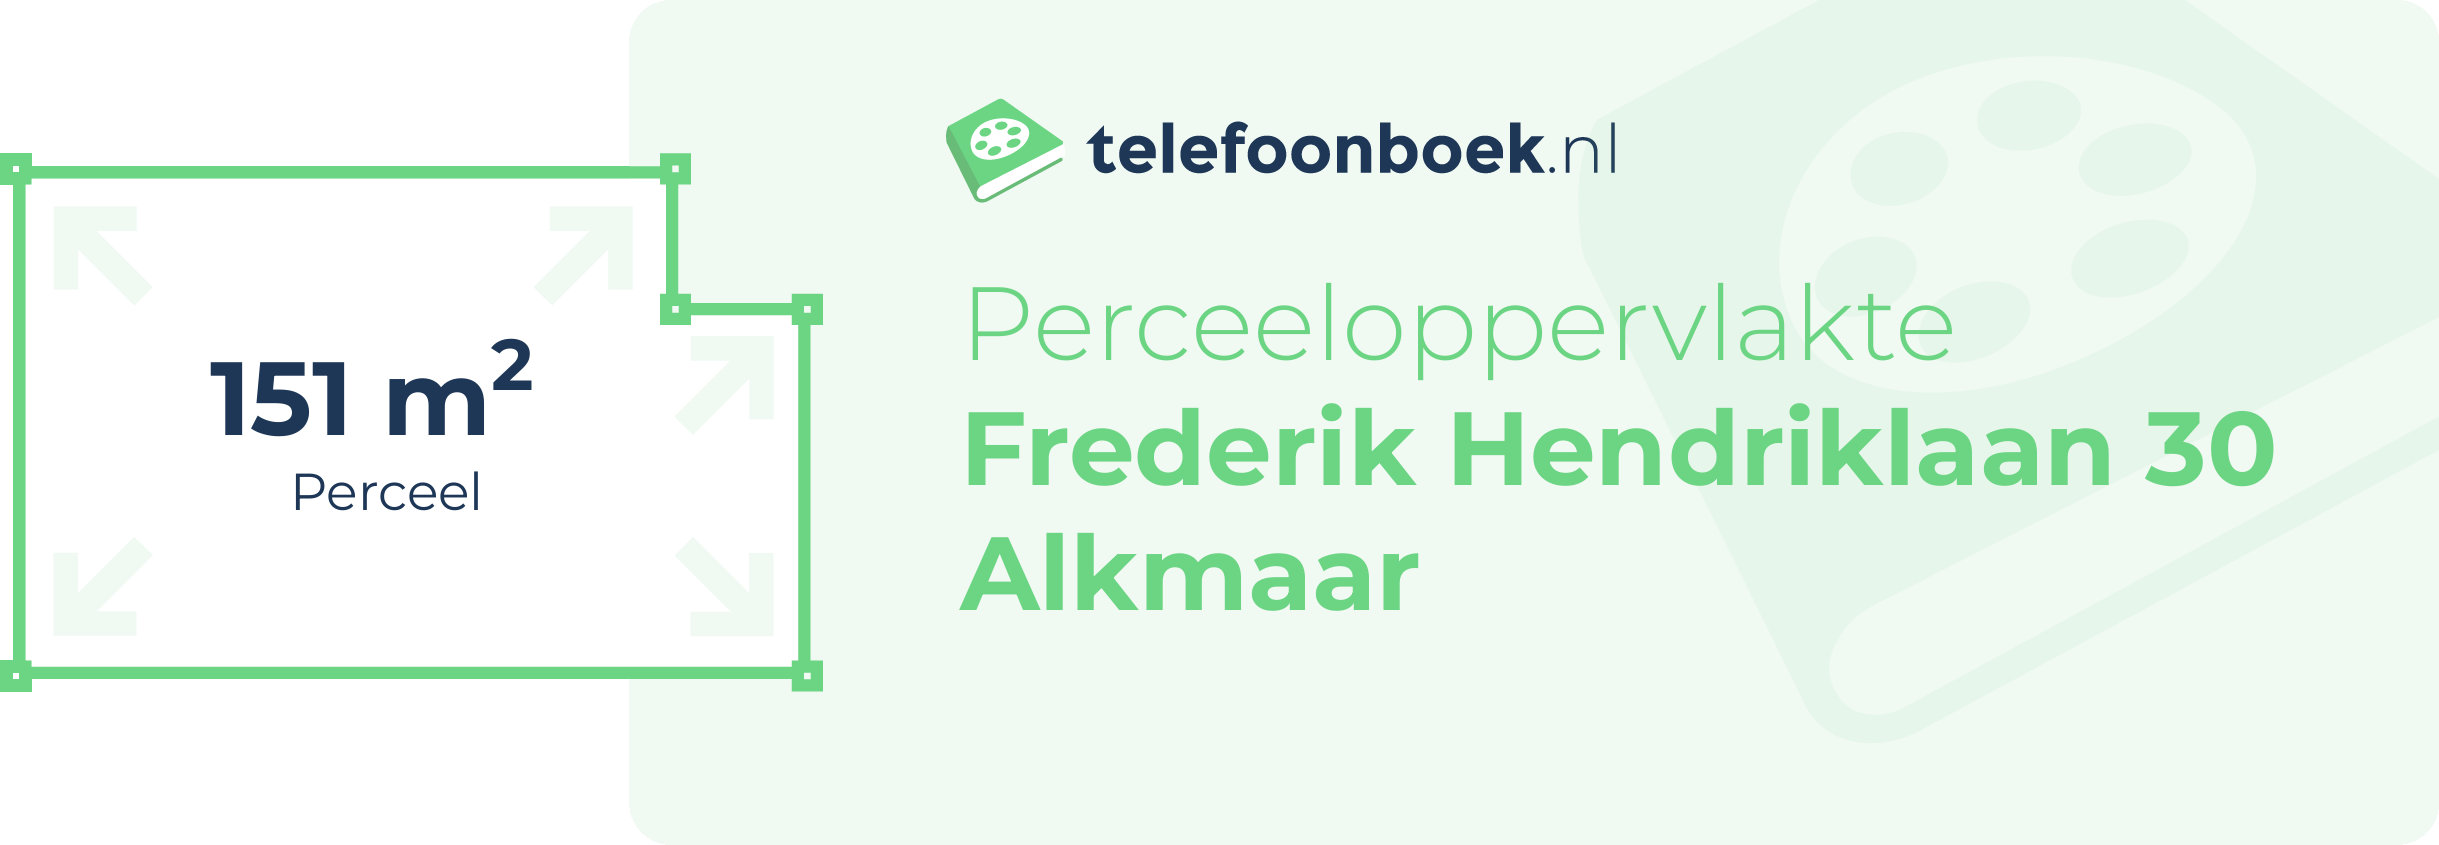 Perceeloppervlakte Frederik Hendriklaan 30 Alkmaar